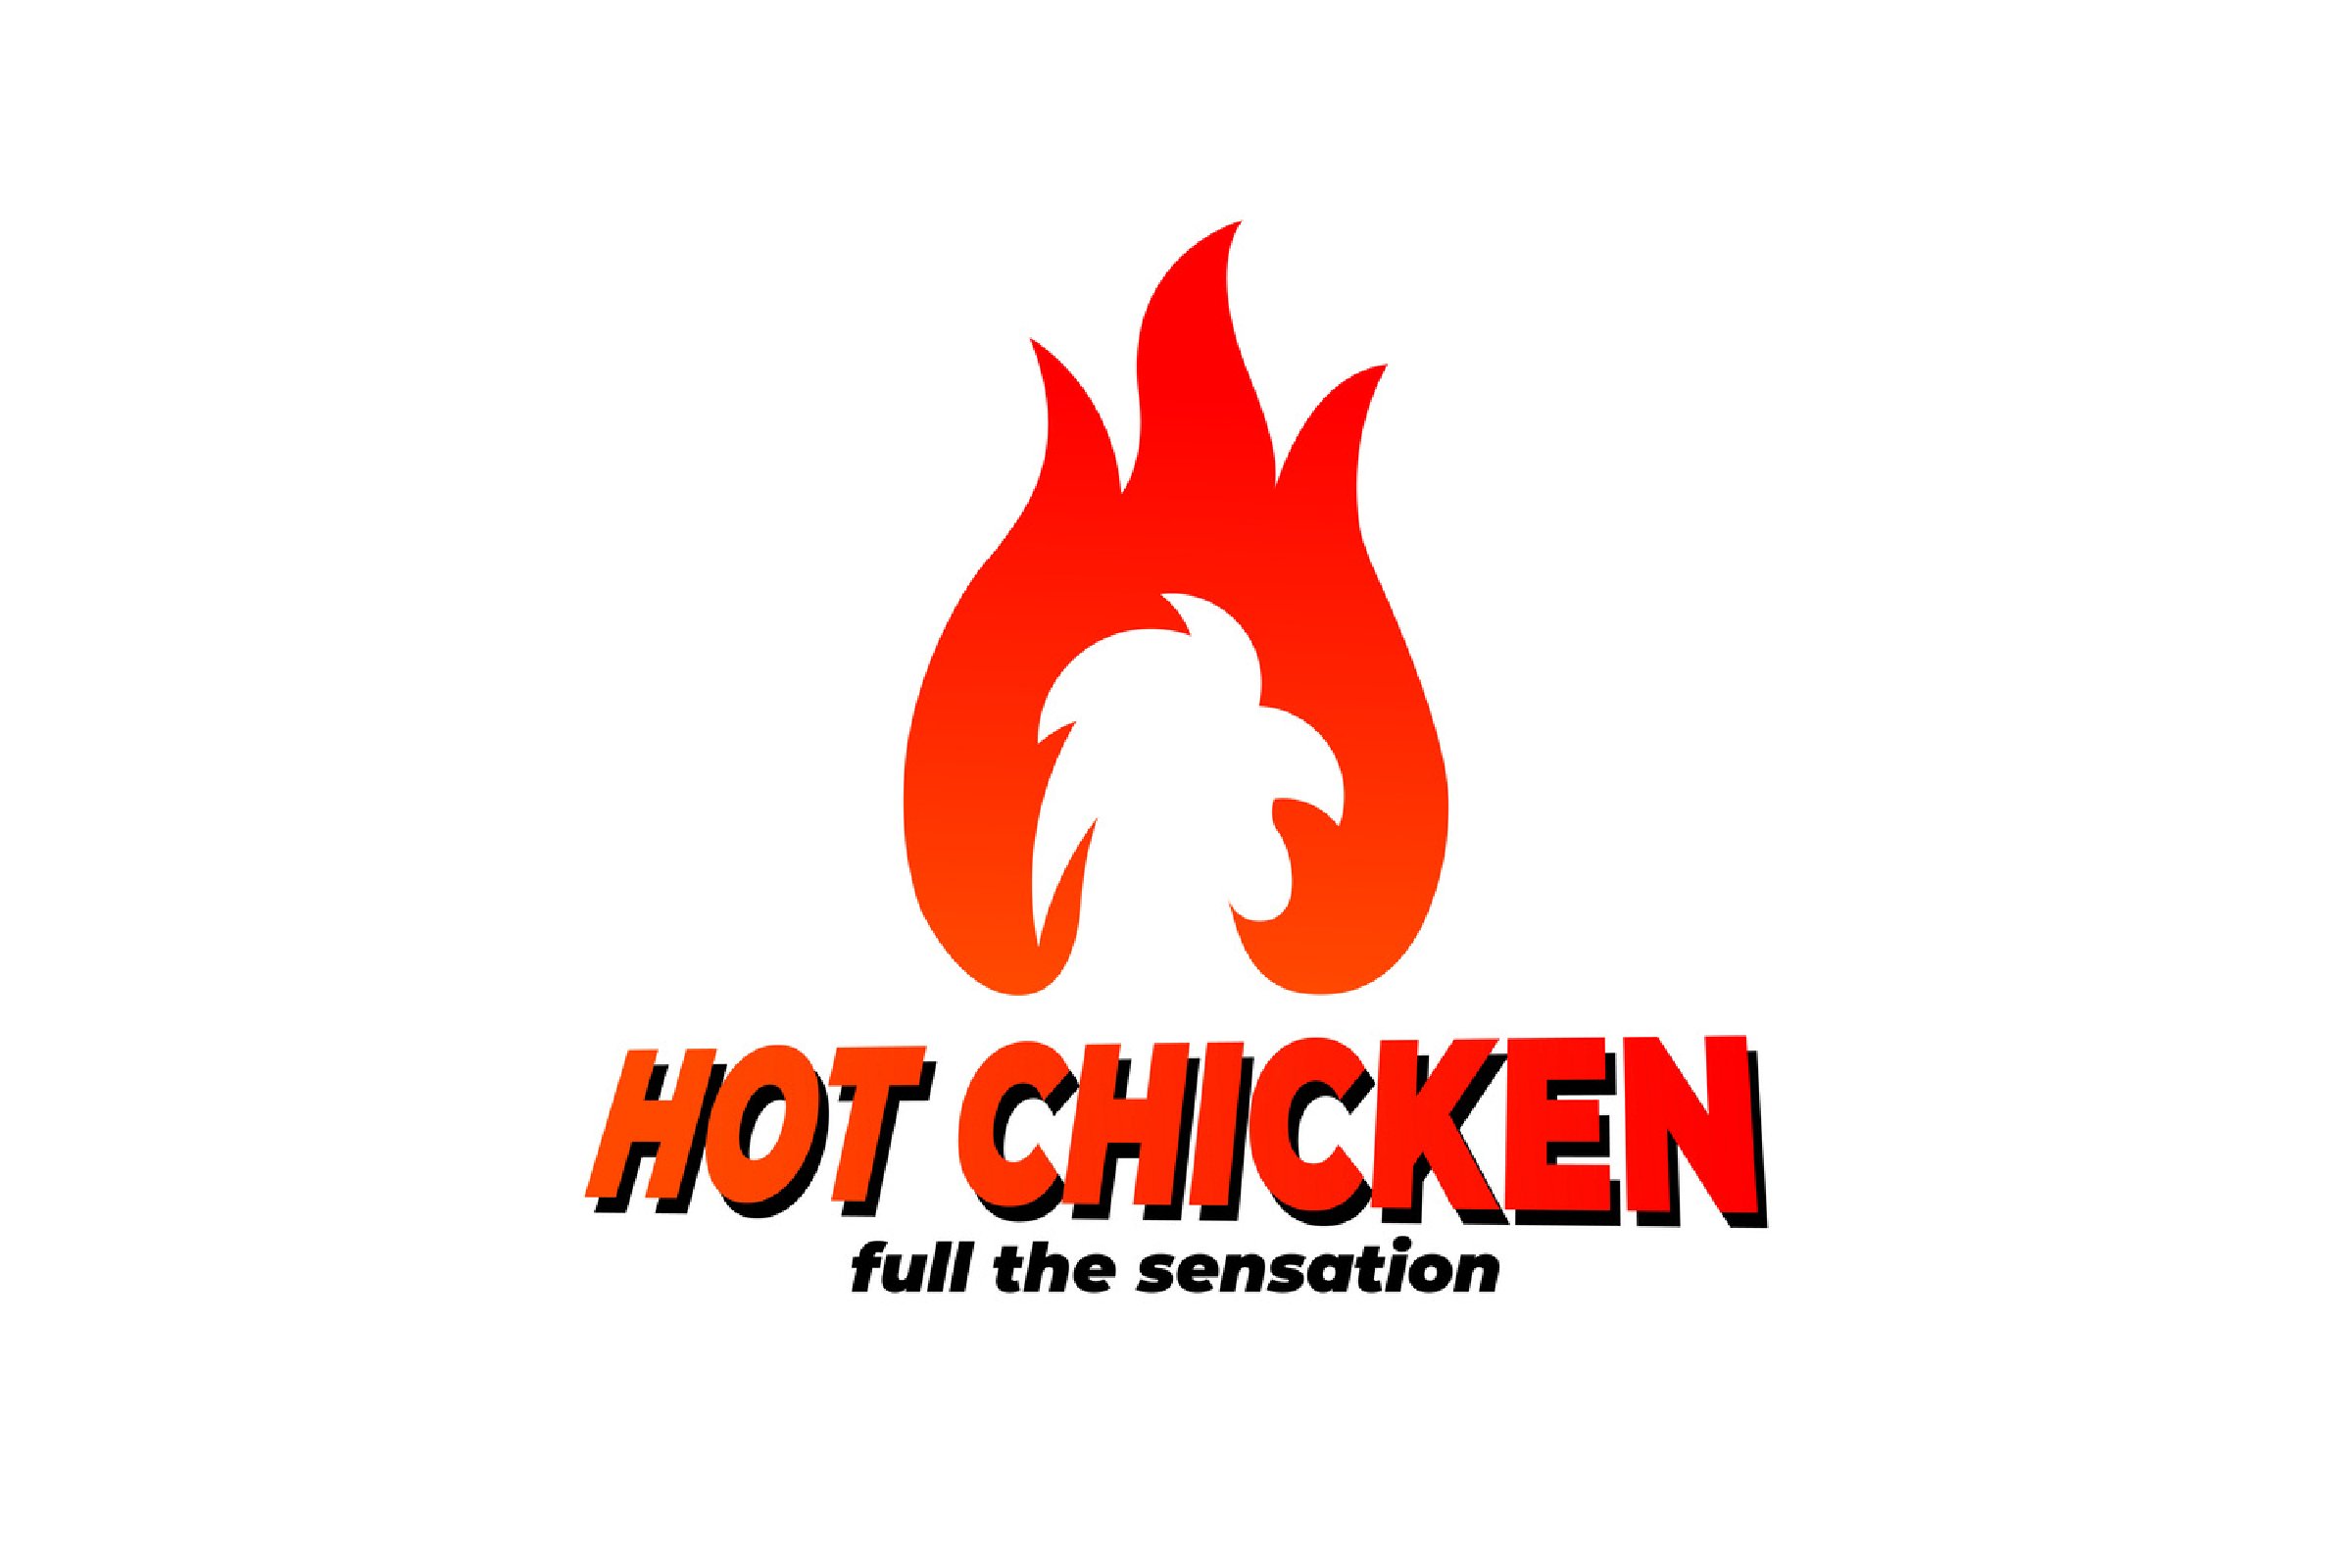 hot chicken logo. chicken spicy cover image.